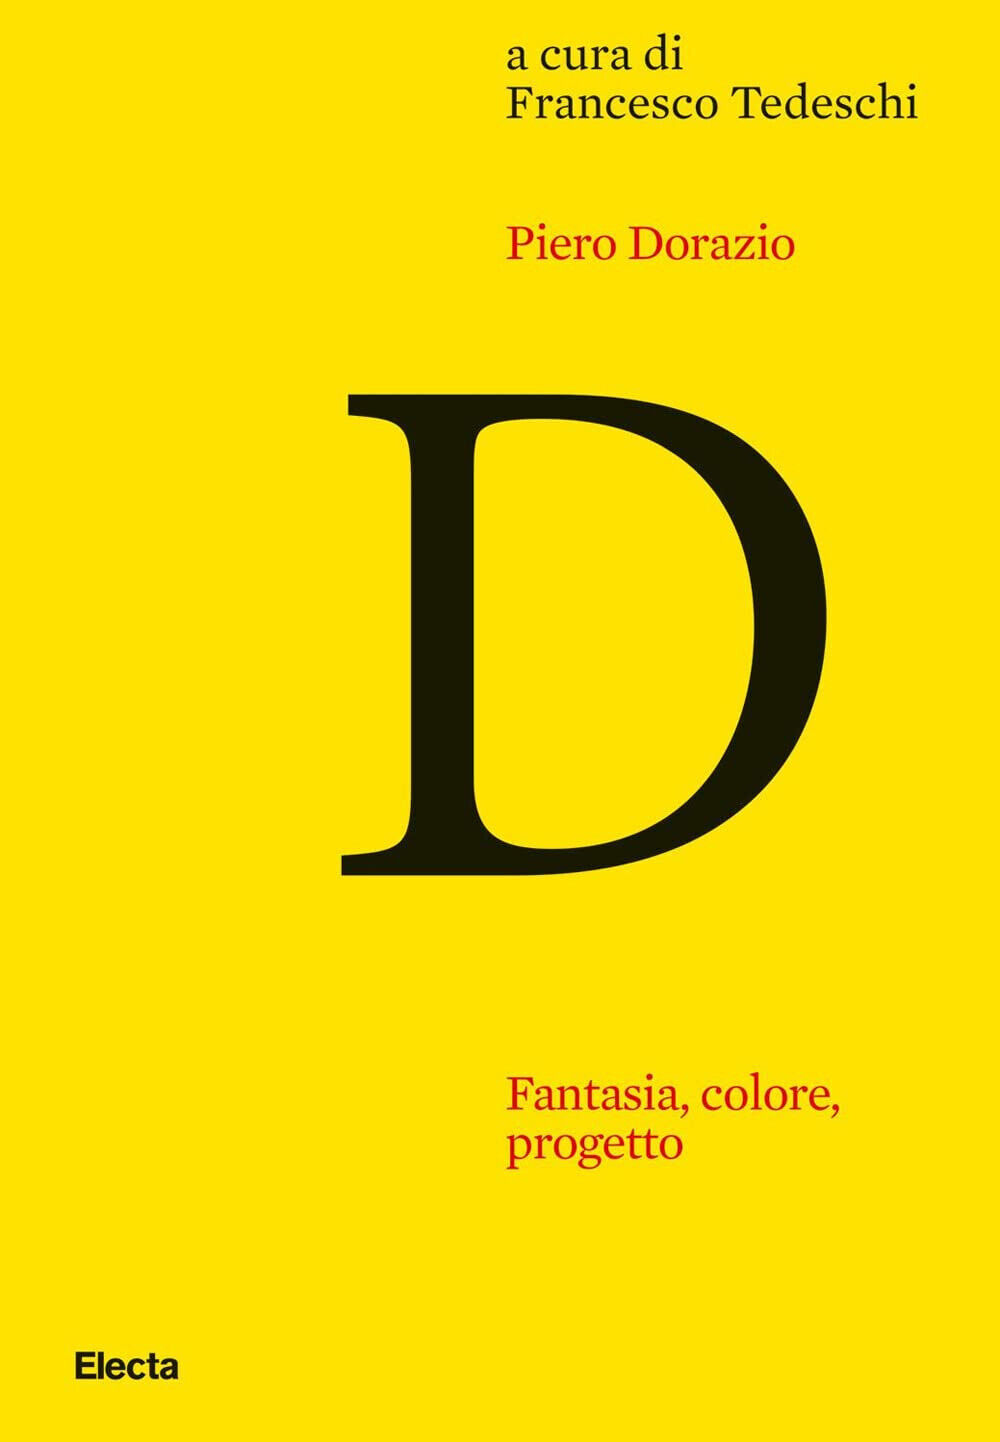 Piero Dorazio. Fantasia, colore, progetto - F. Tedeschi - Electa, 2021 libro usato